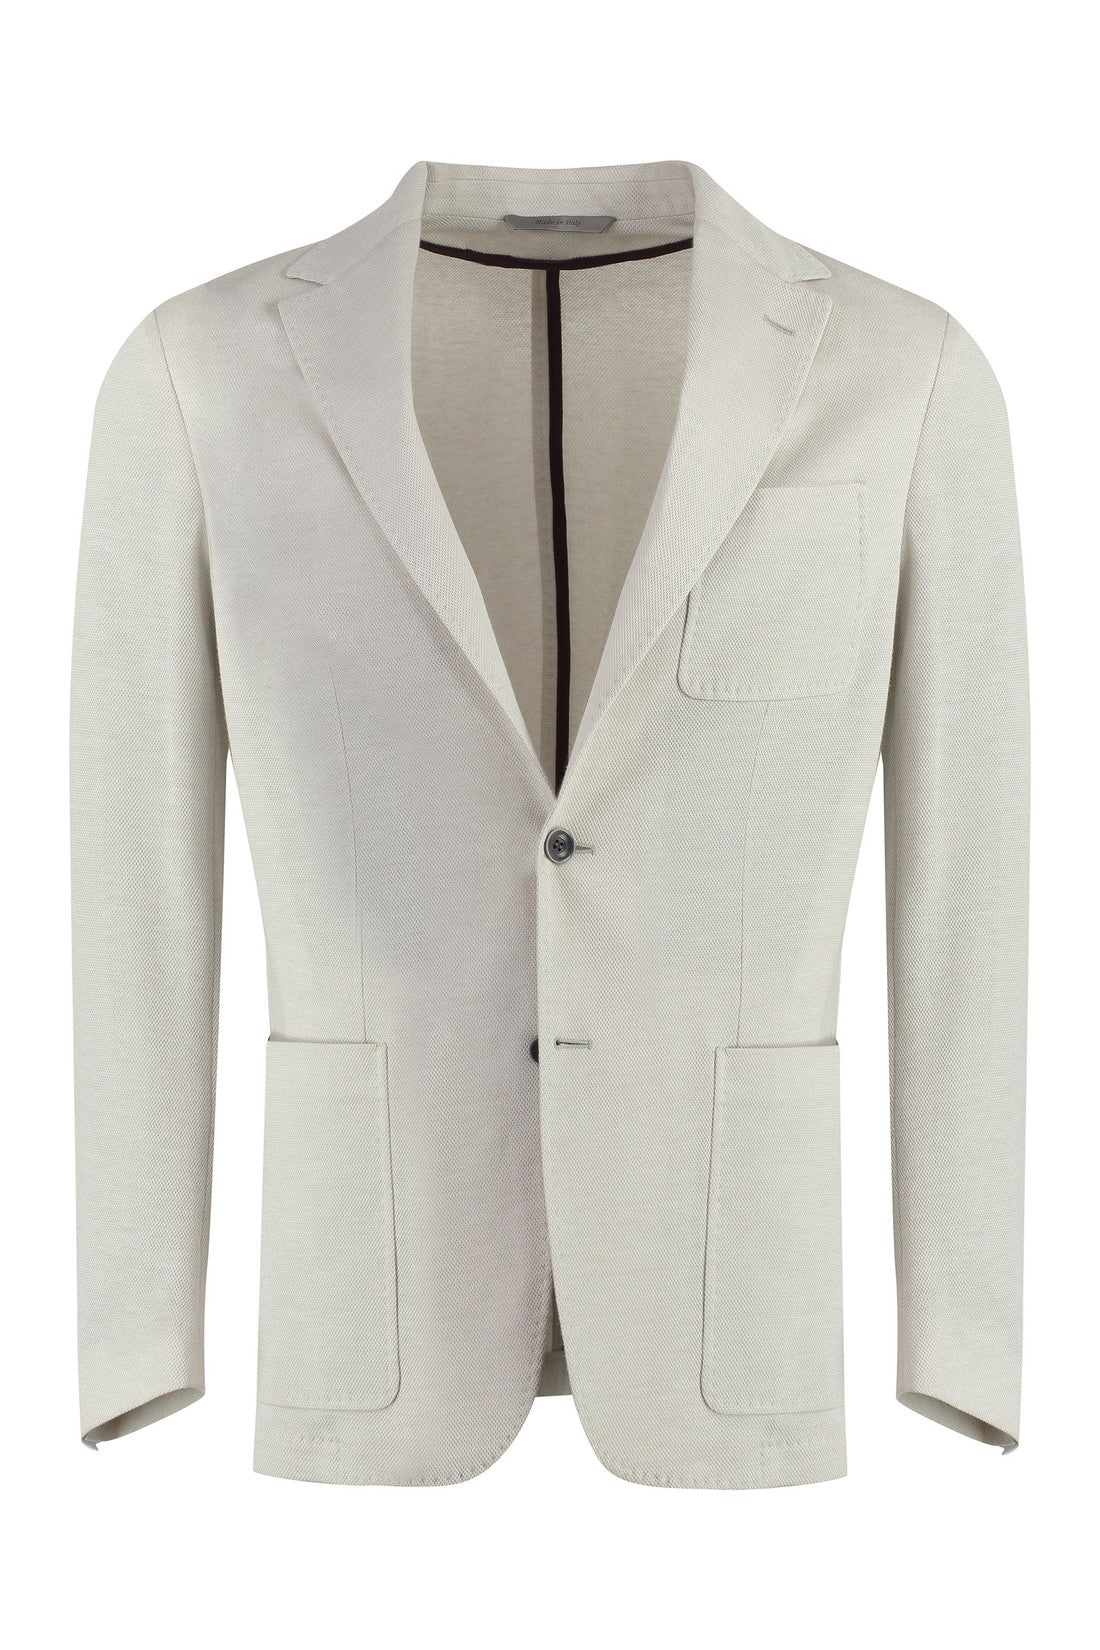 Canali-OUTLET-SALE-Cotton blend blazer-ARCHIVIST